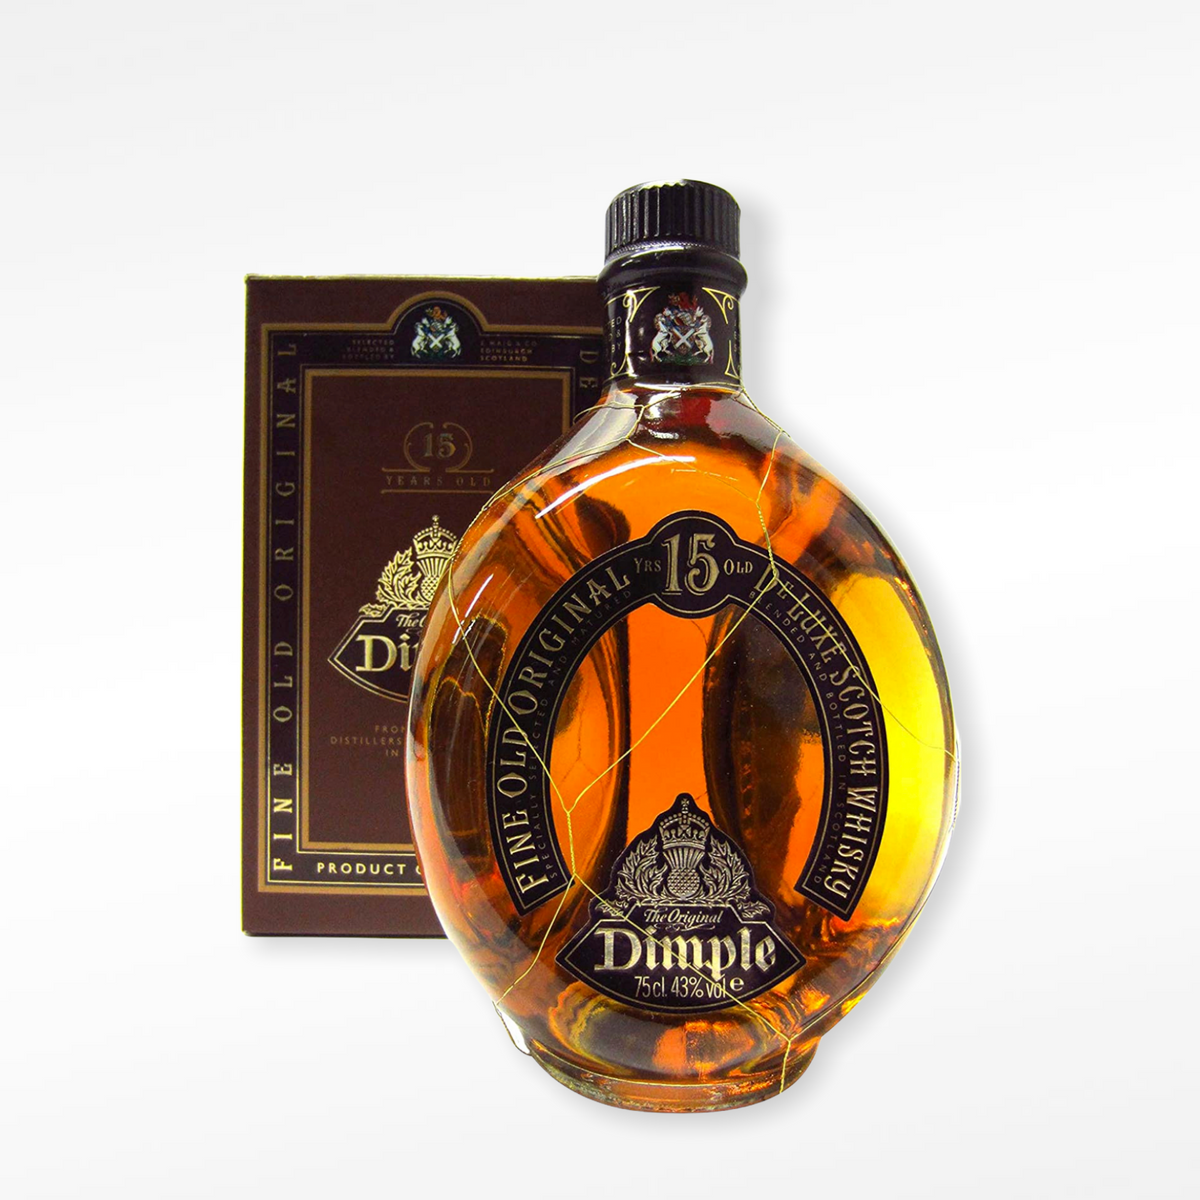 Dimple 15 ans d'âge Fine Old Original De Luxe Scotch Whisky